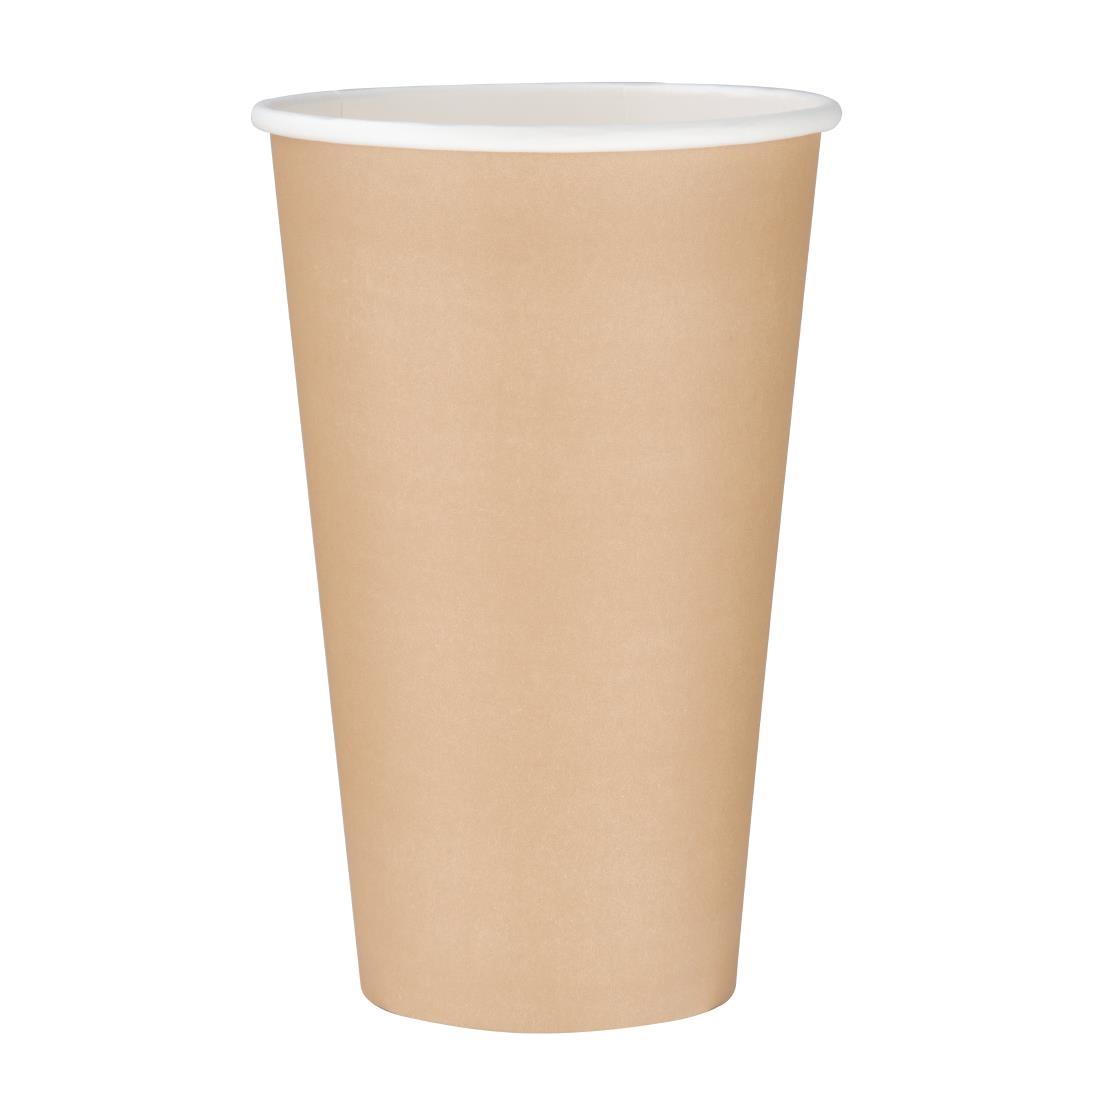 Fiesta Recyclable Single Wall Takeaway Coffee Cups Kraft 455ml / 16oz (Pack of 50) - GF035  - 1